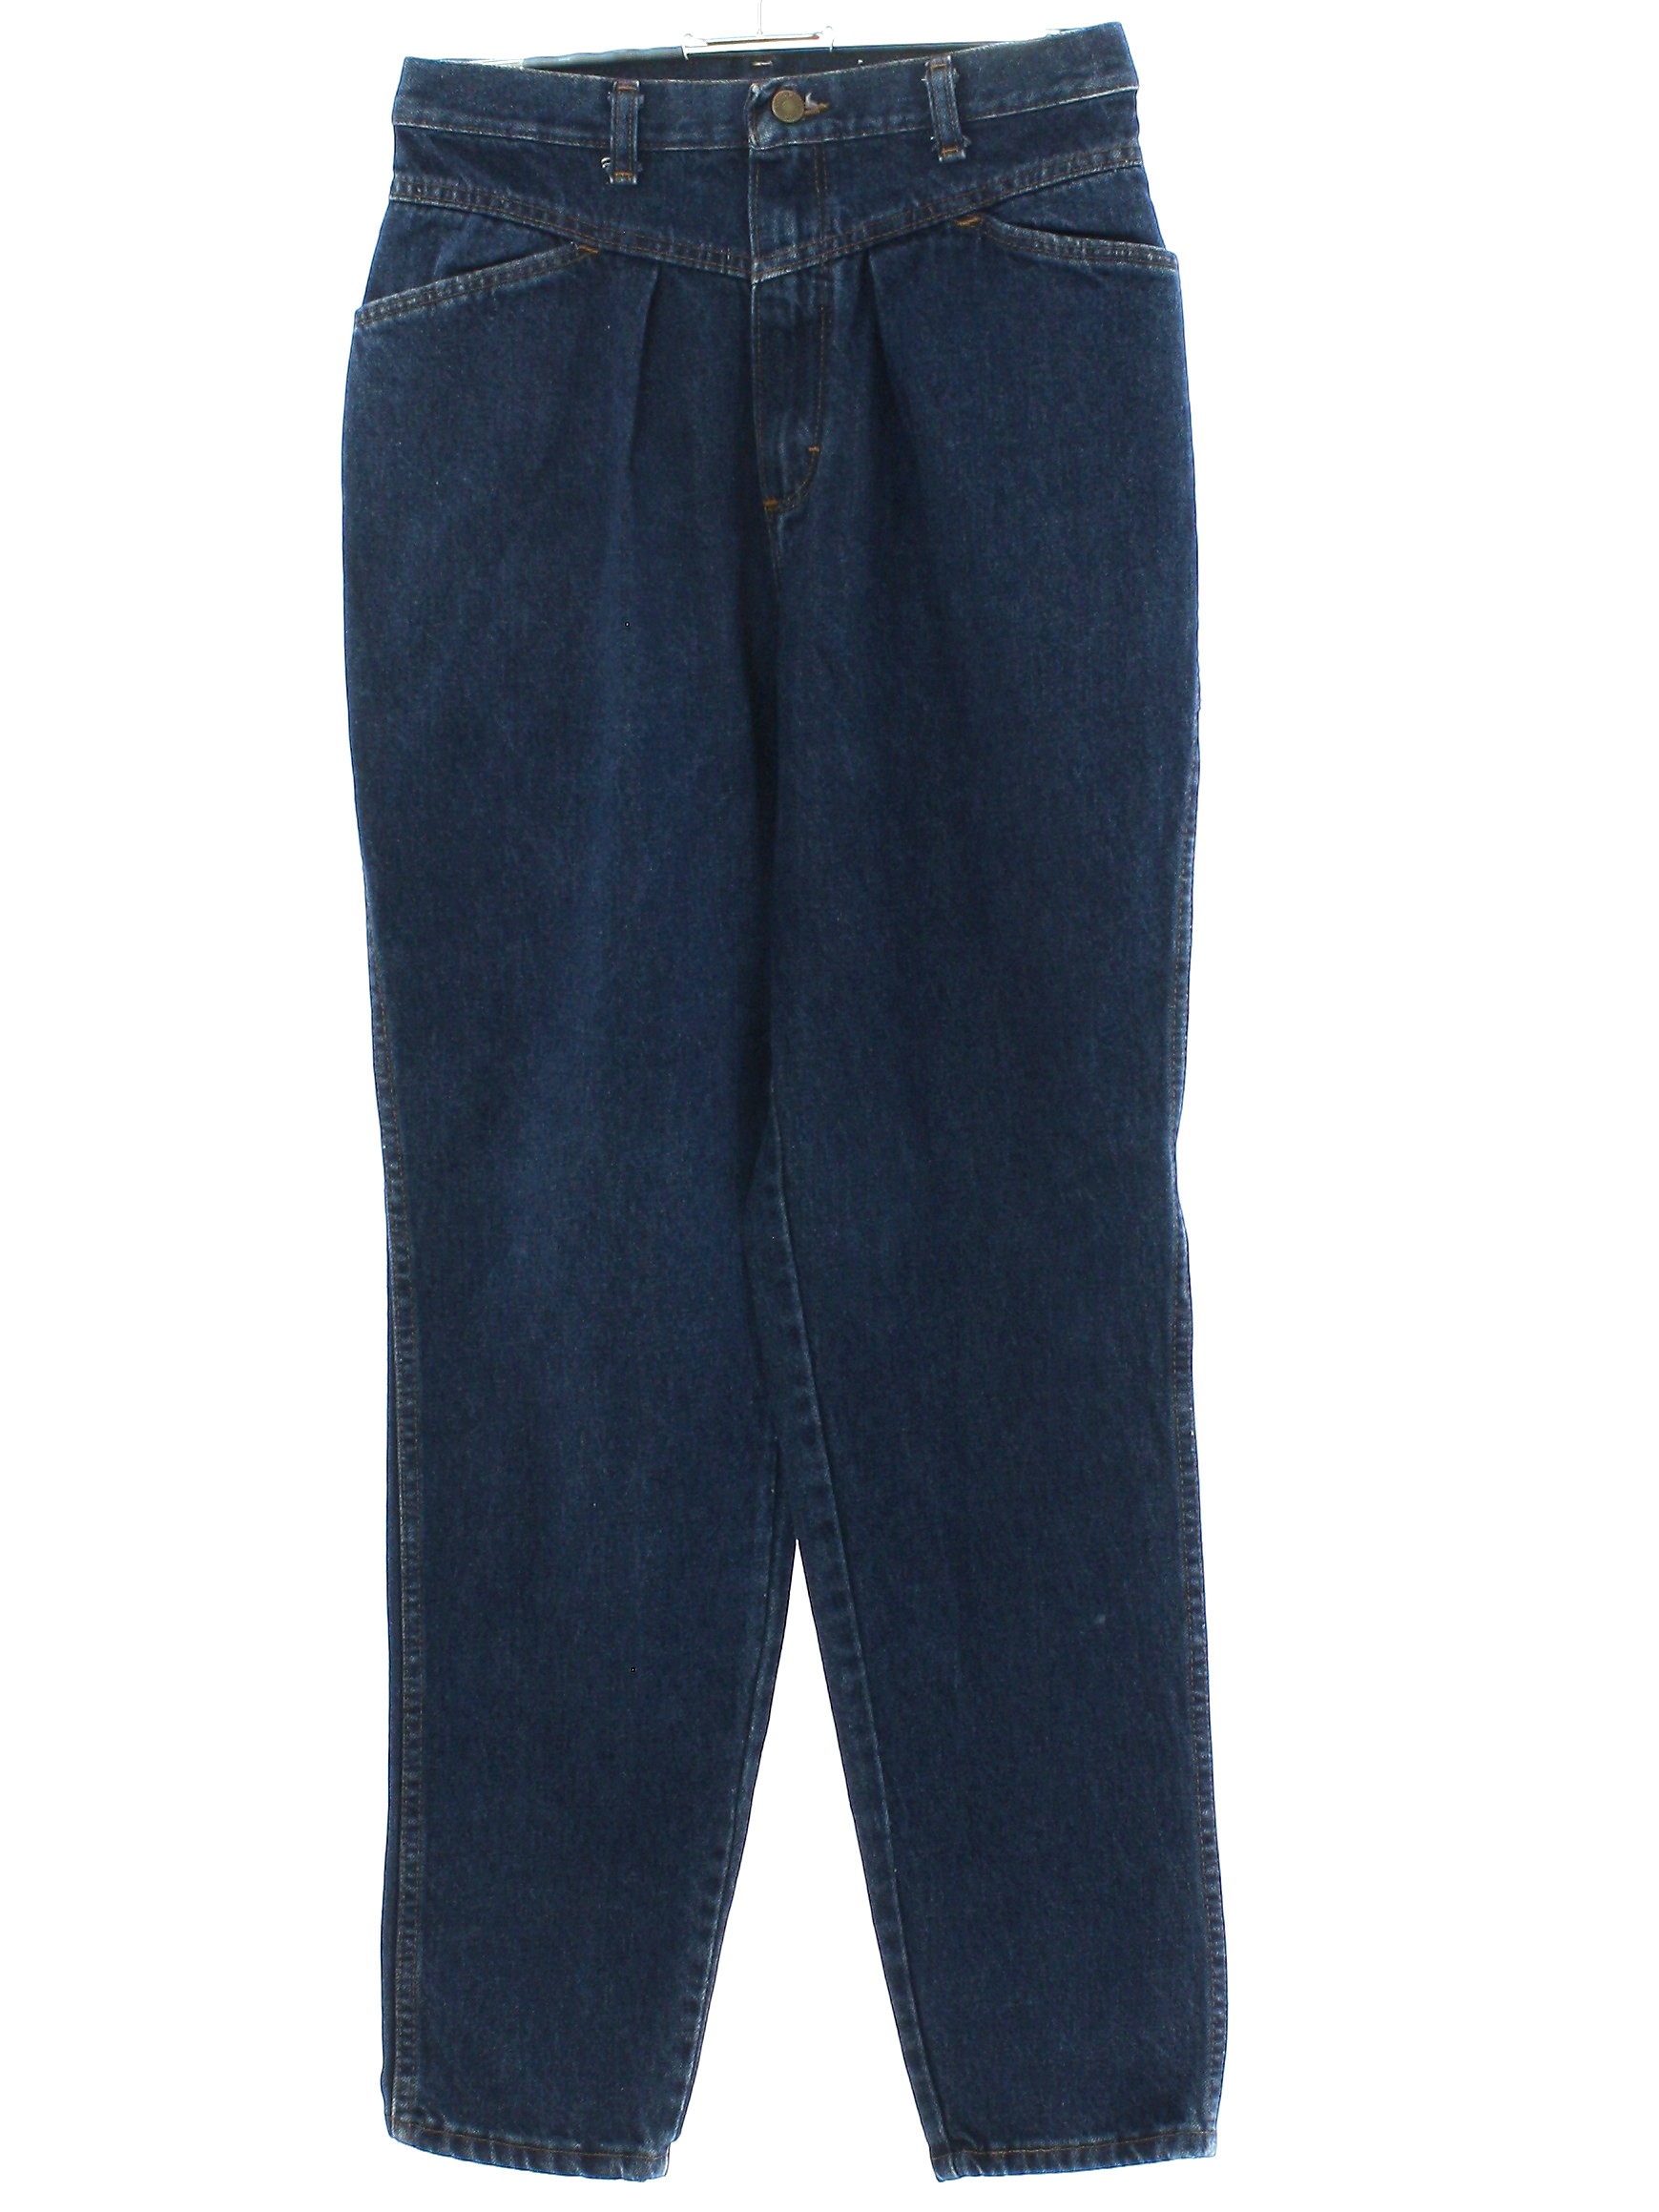 80s Pants (Wrangler): 80s -Wrangler- Womens as-new blue cotton denim ...